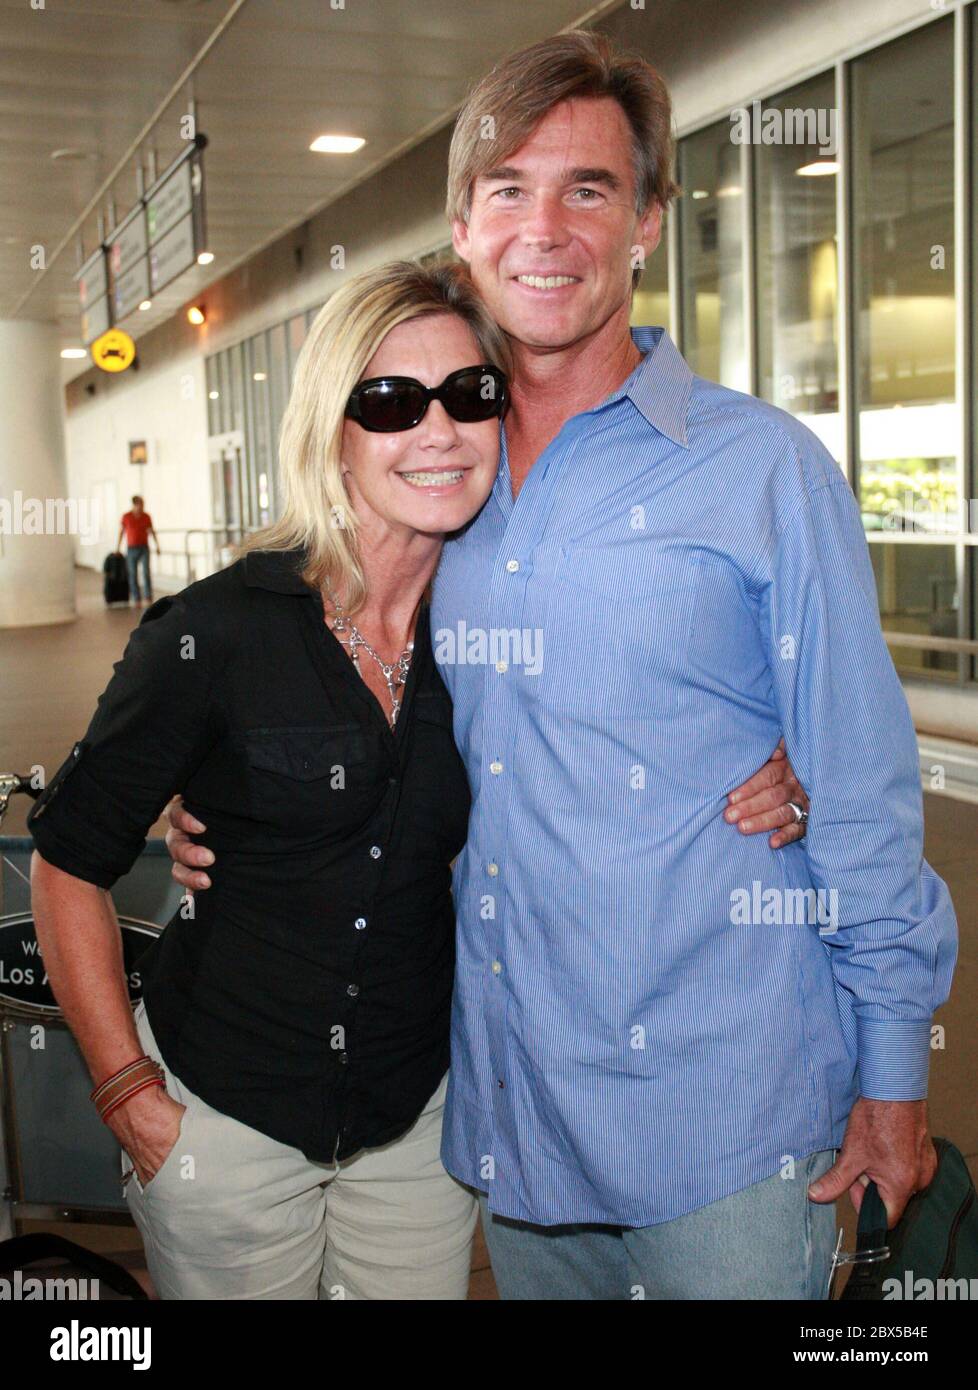 Olivia Newton-John y su marido llegan al Aeropuerto de los Ángeles después de unas vacaciones cortas en Florida. Olivia estaba resplandeciente y sonríe mientras se dirigía a casa. Agosto de 14 2008 Foto de stock